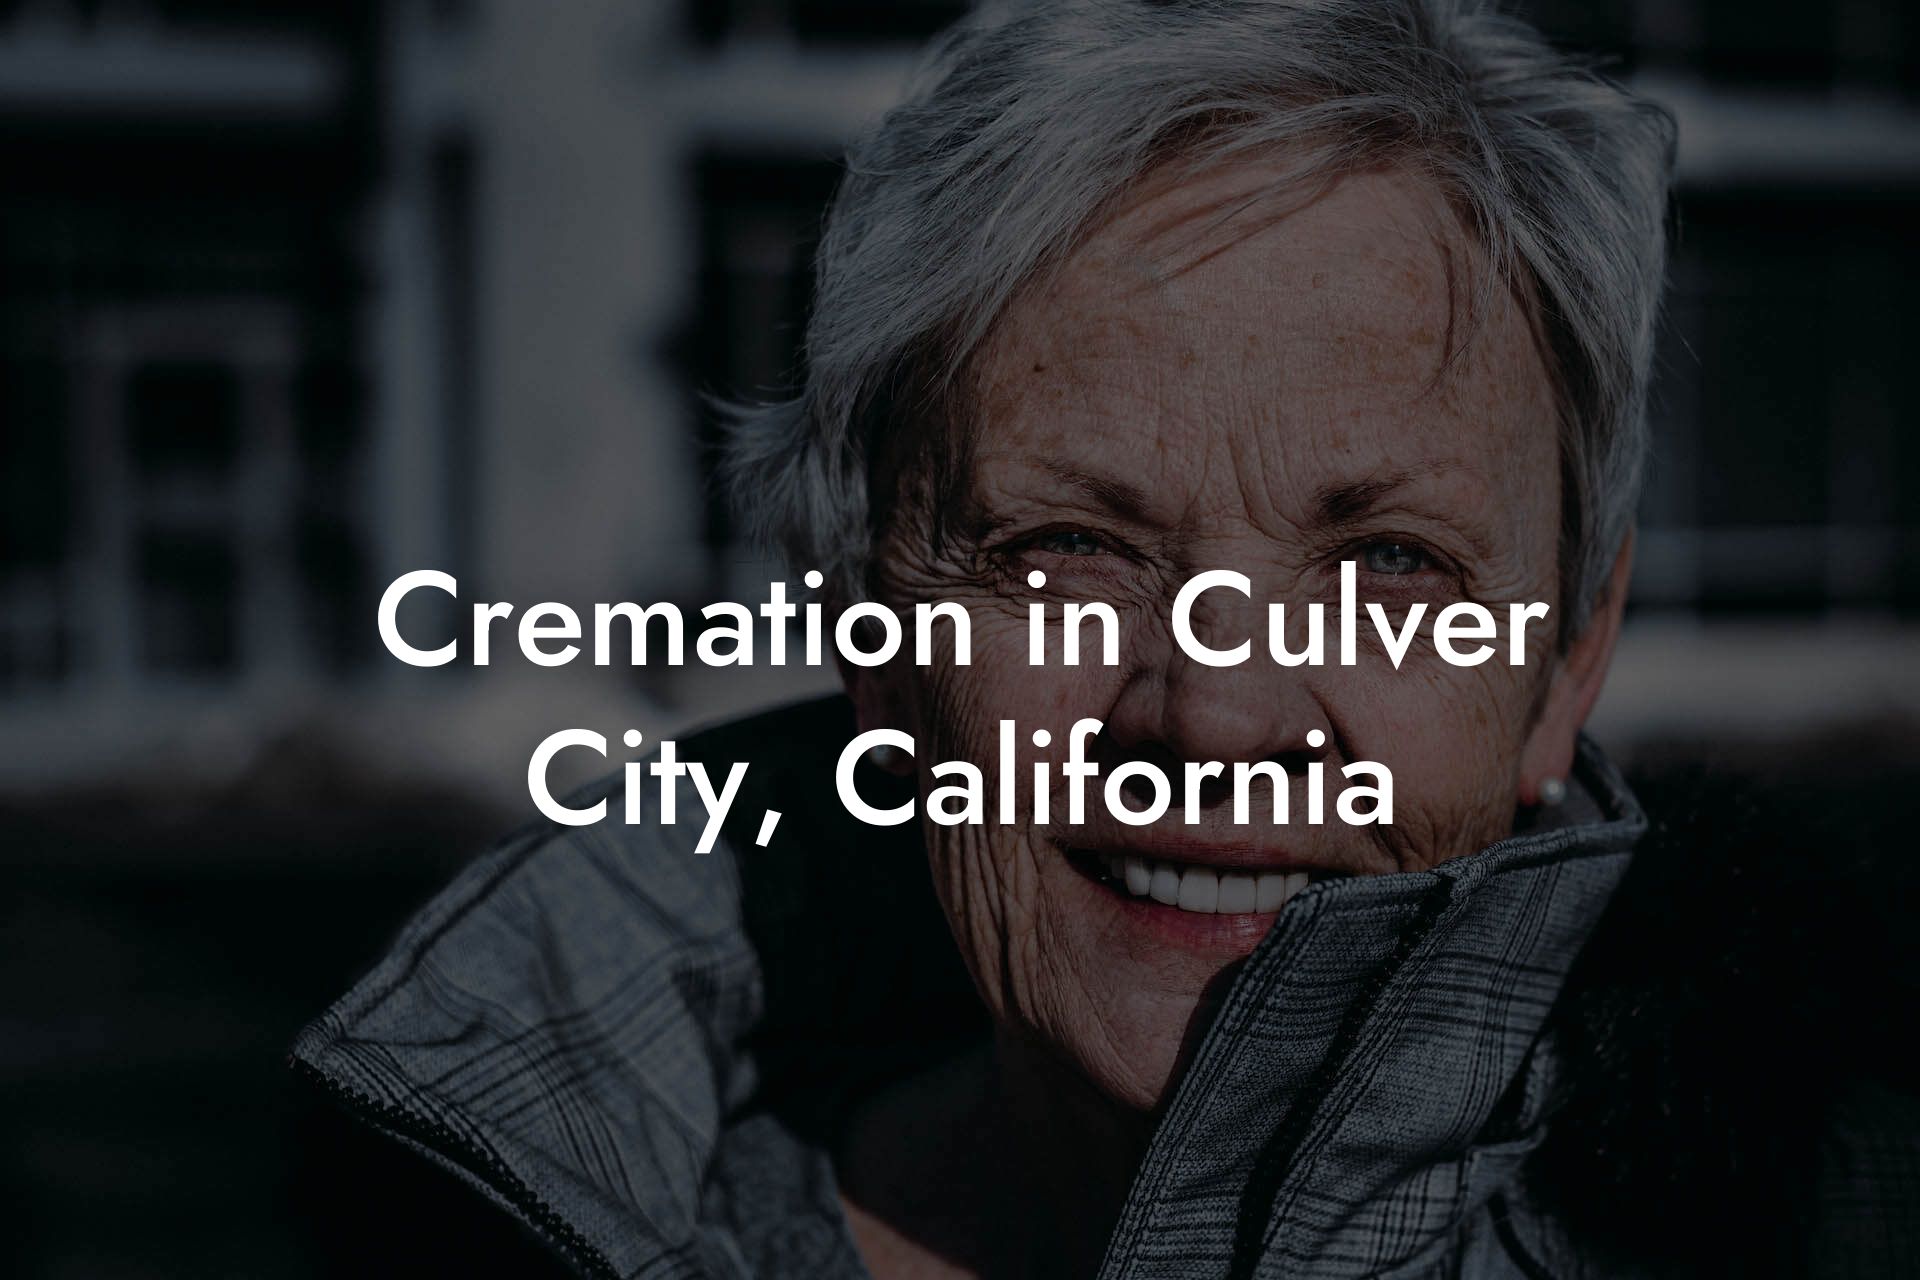 Cremation in Culver City, California